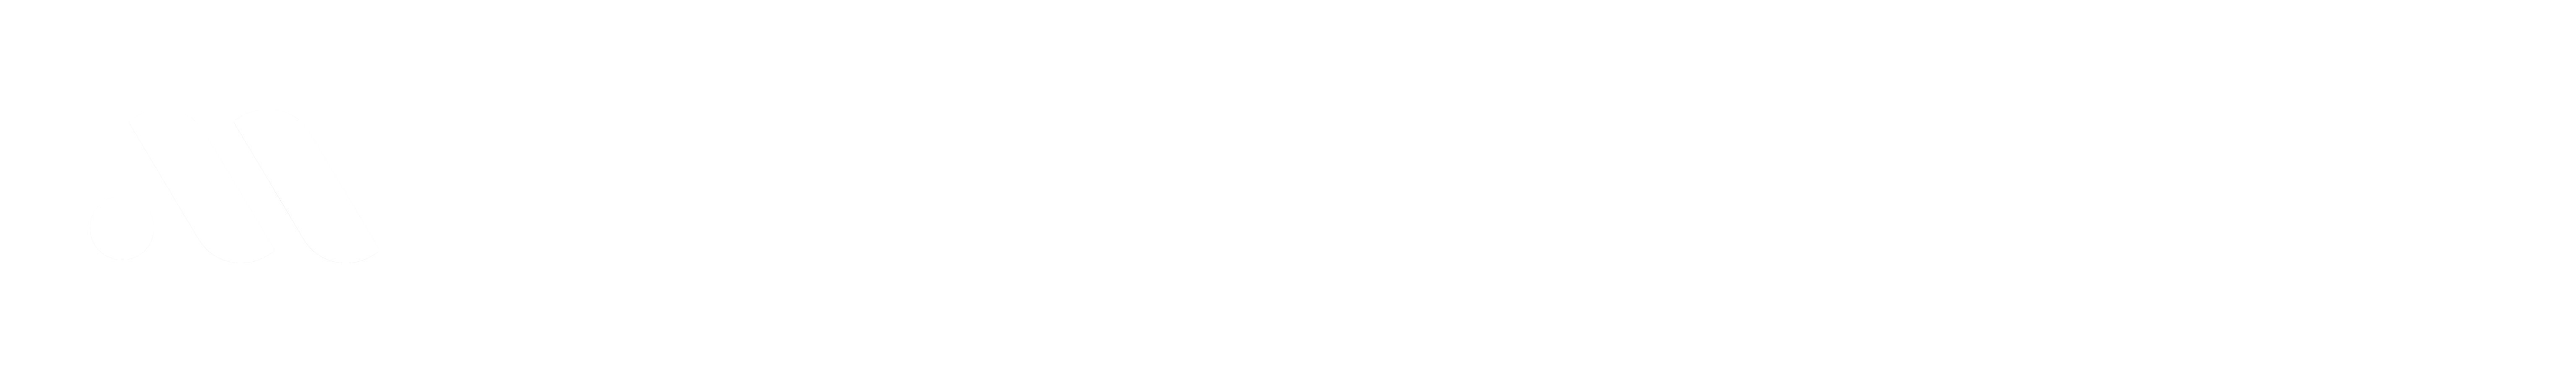 MATTEO COLOMBO PRODUCTION